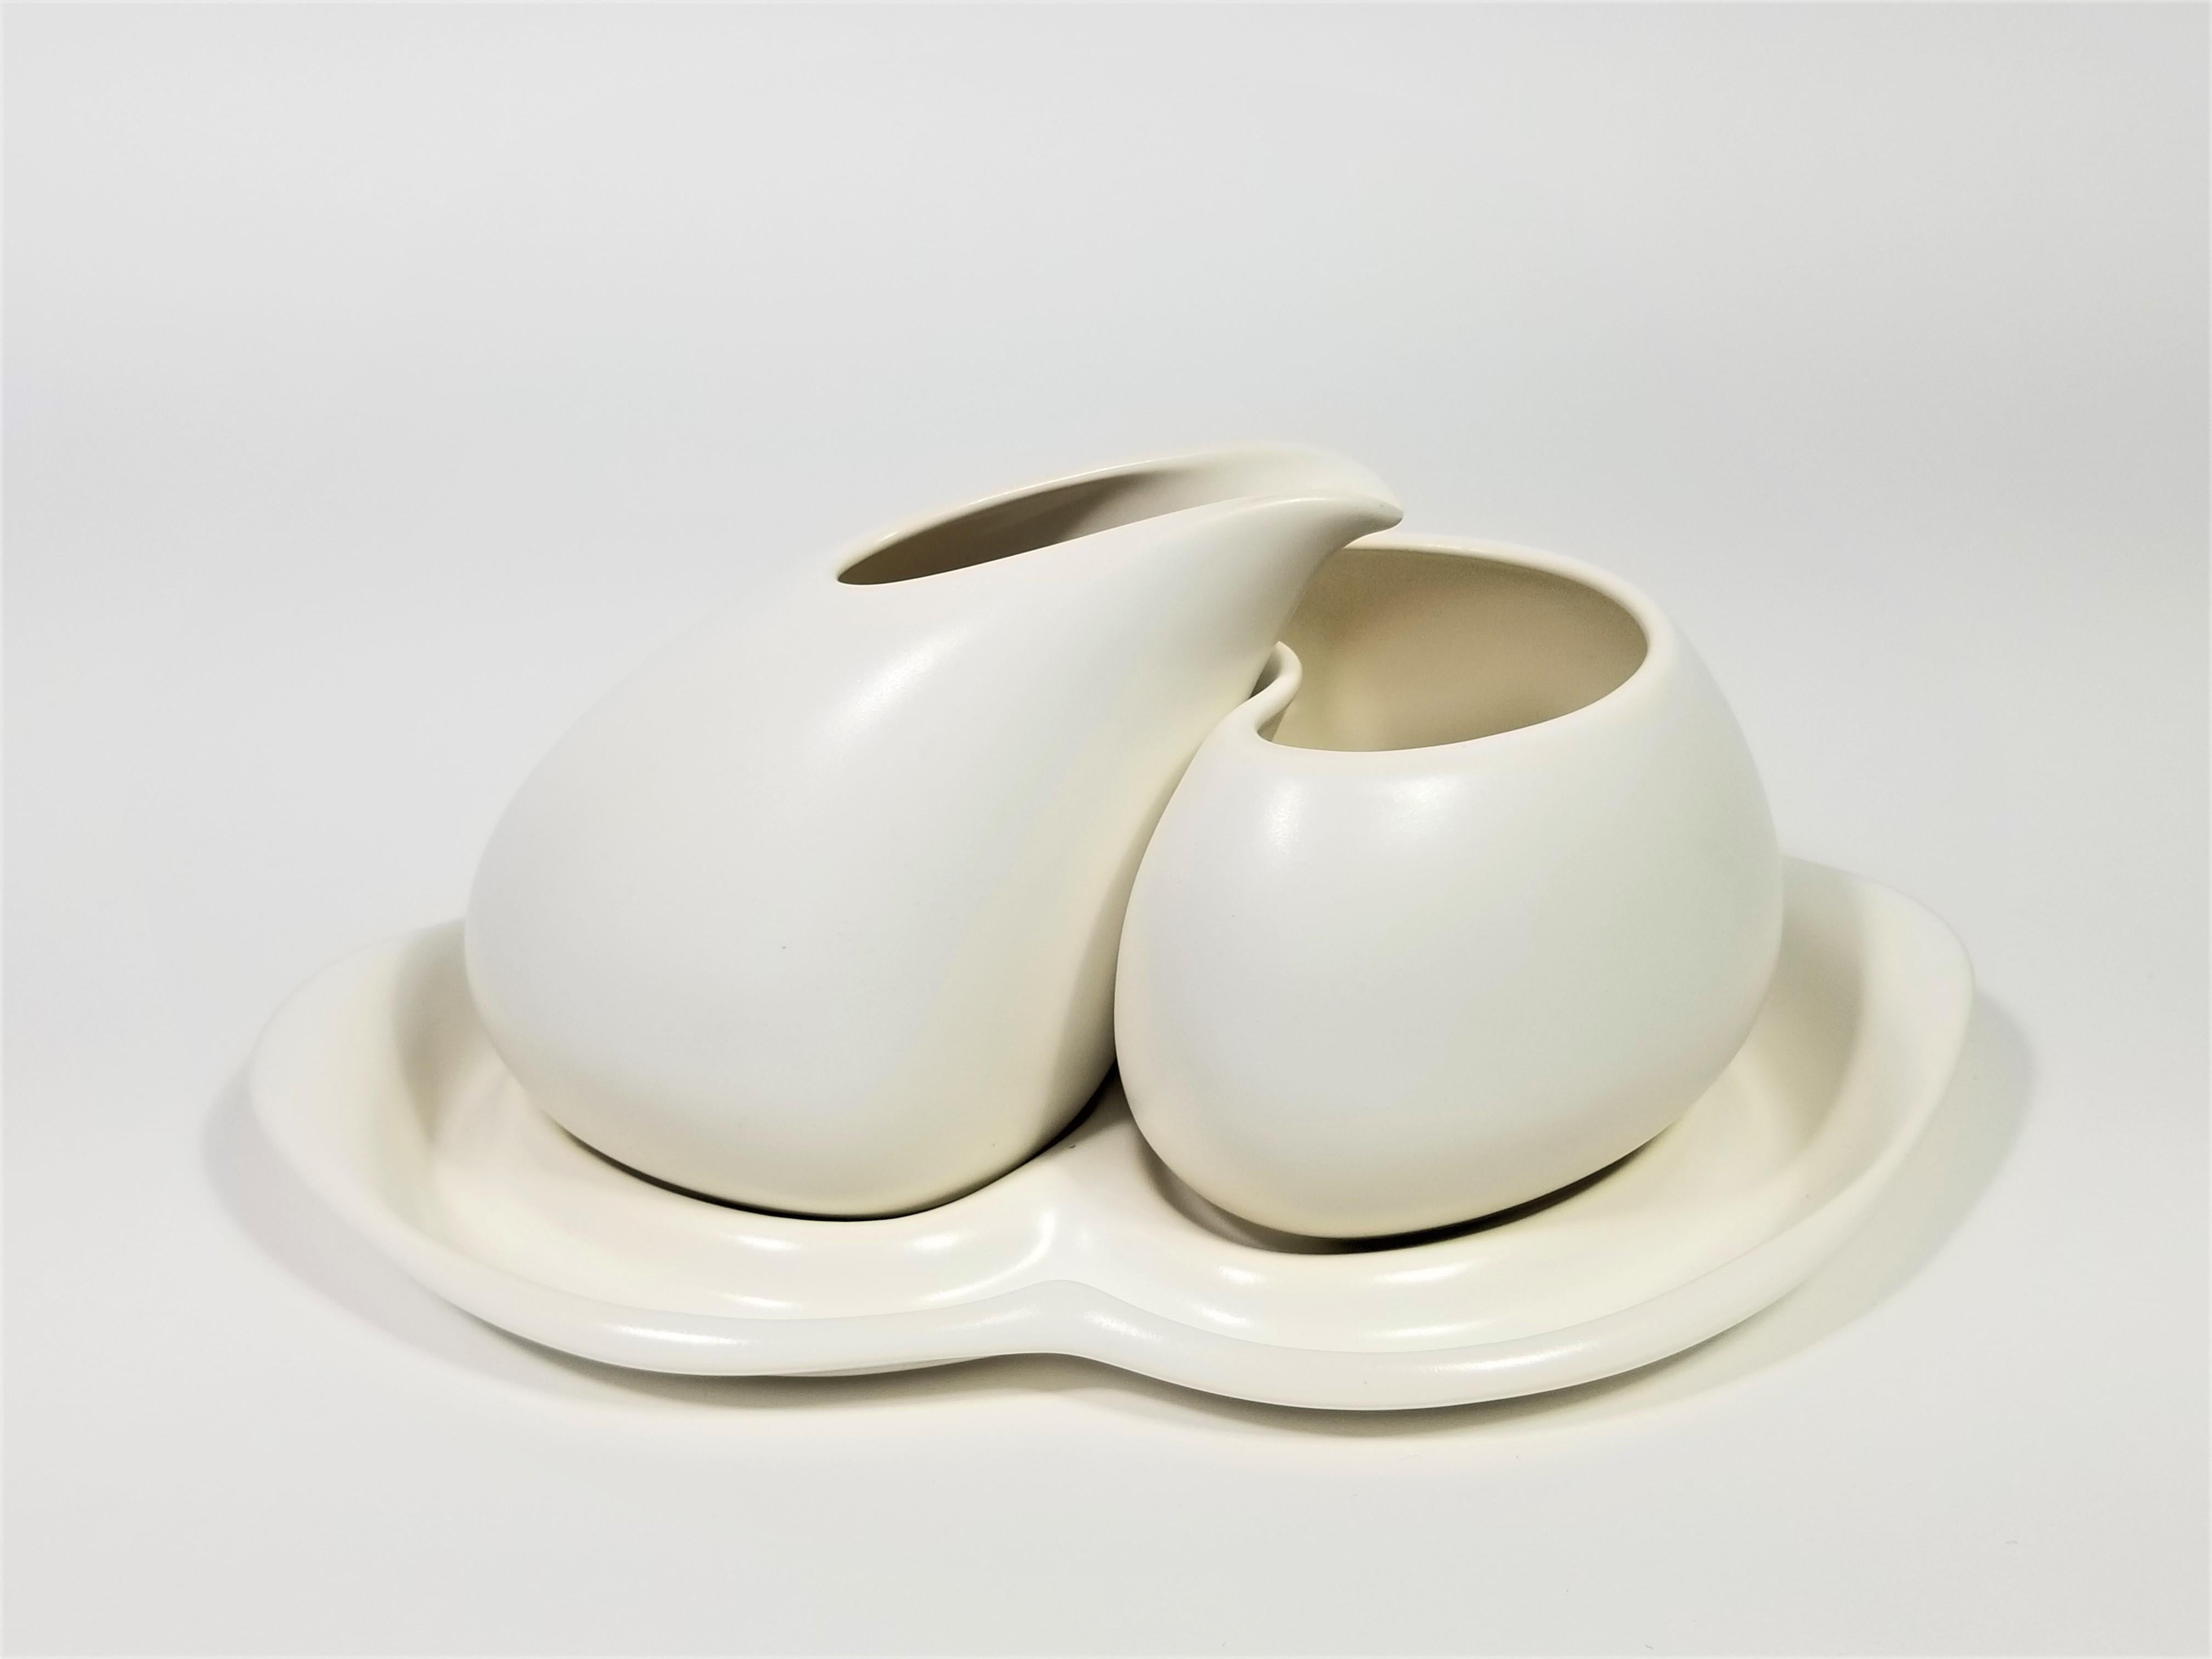 Porcelain Artist Signed Sculptural Modernist Cream and Sugar Set For Sale 2